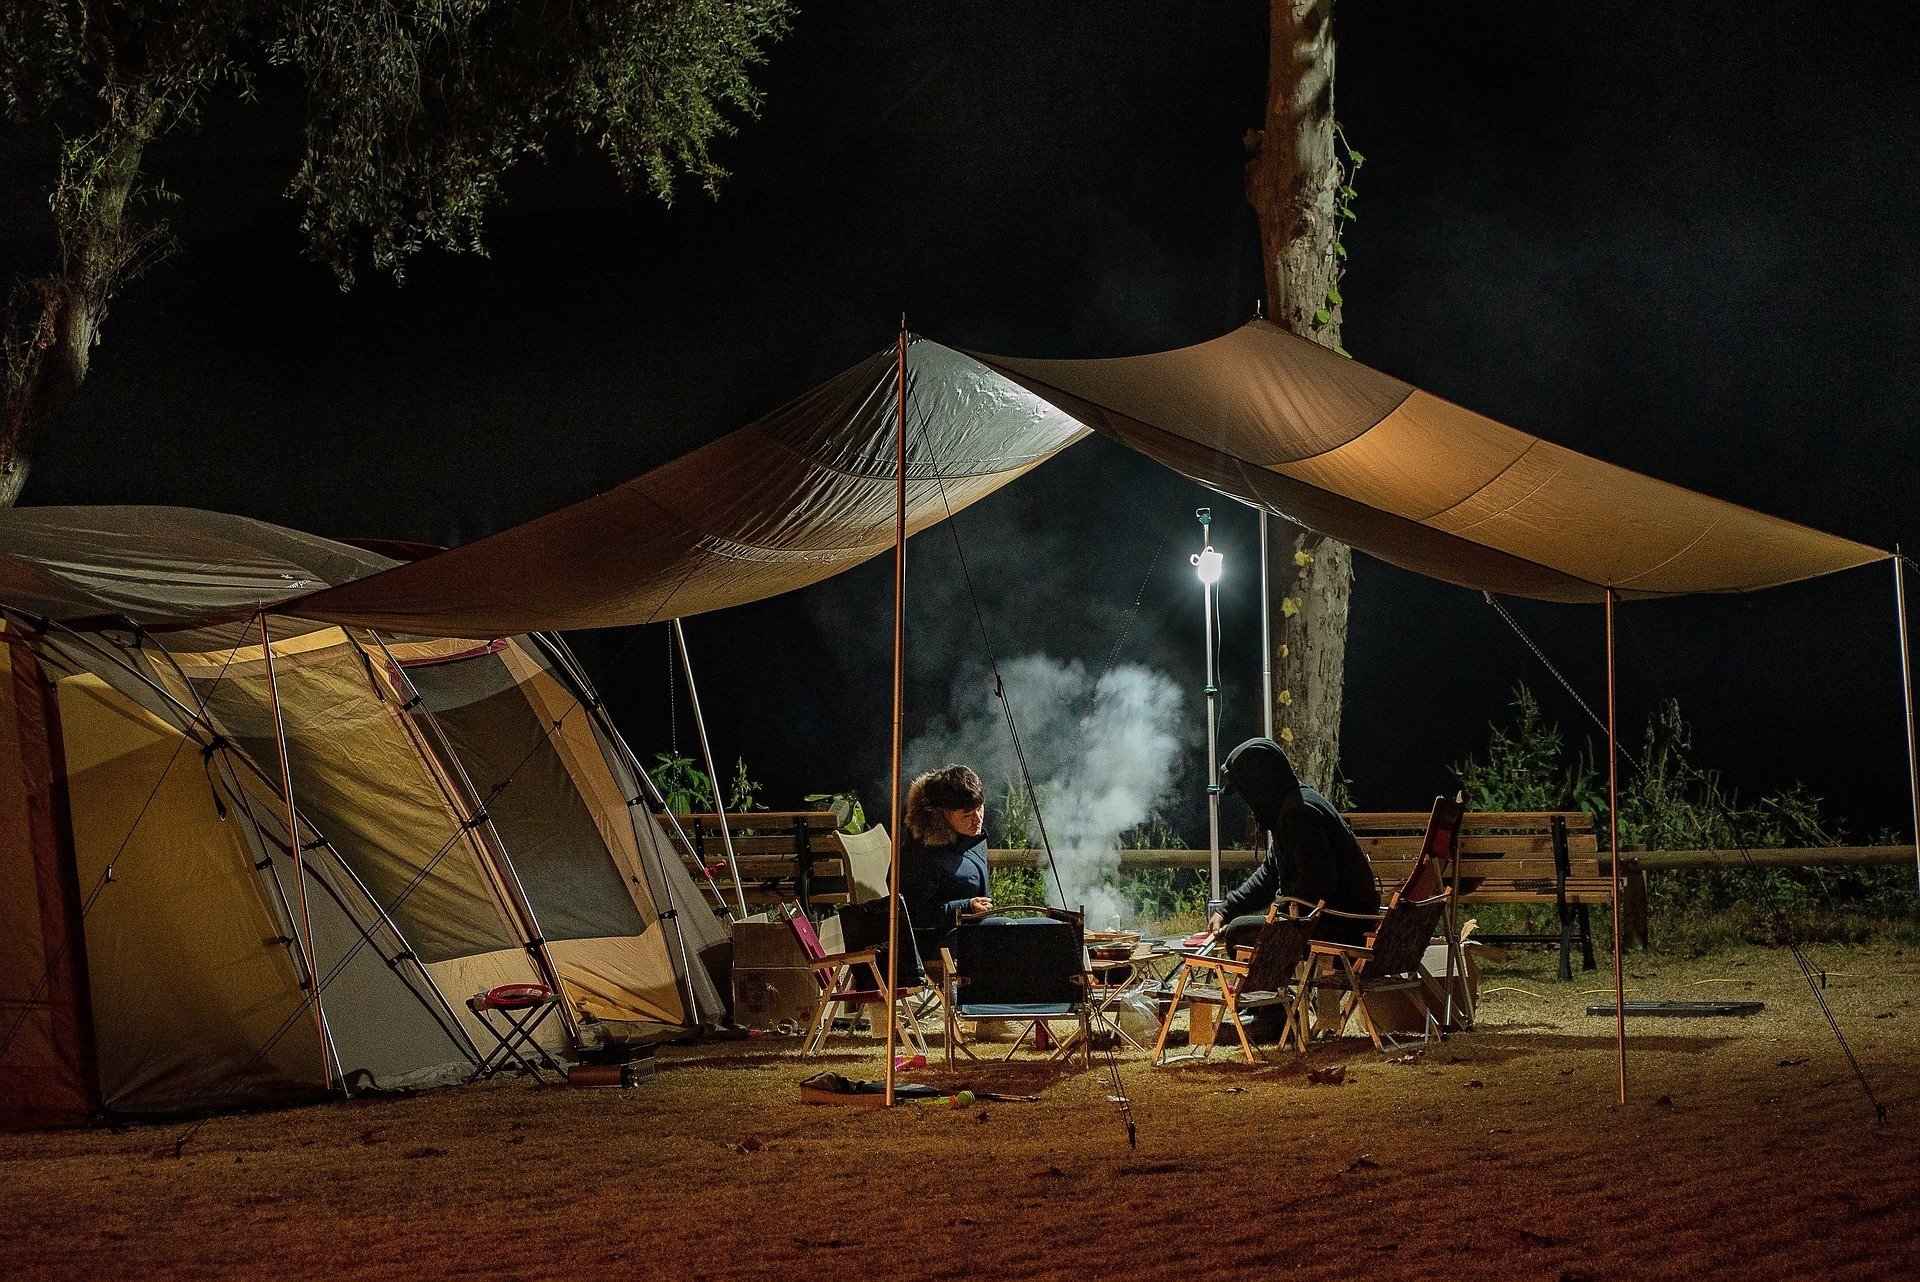 Wyjazd pod namiot, co koniecznie trzeba spakować? | Strona Podróży